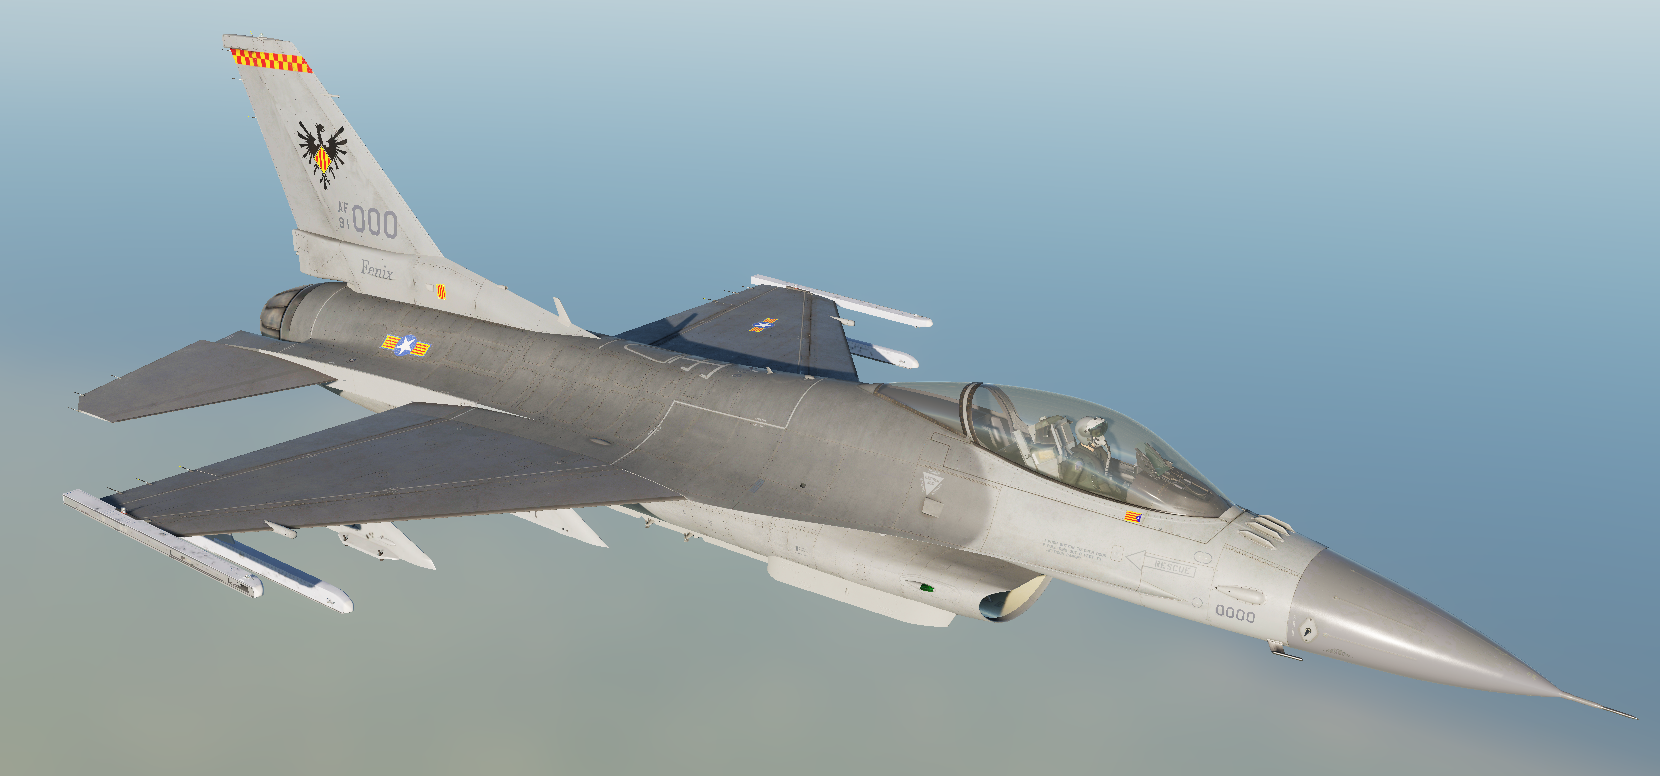 F-16C "Fenix" Força Aerea Catalana (Ficcional)